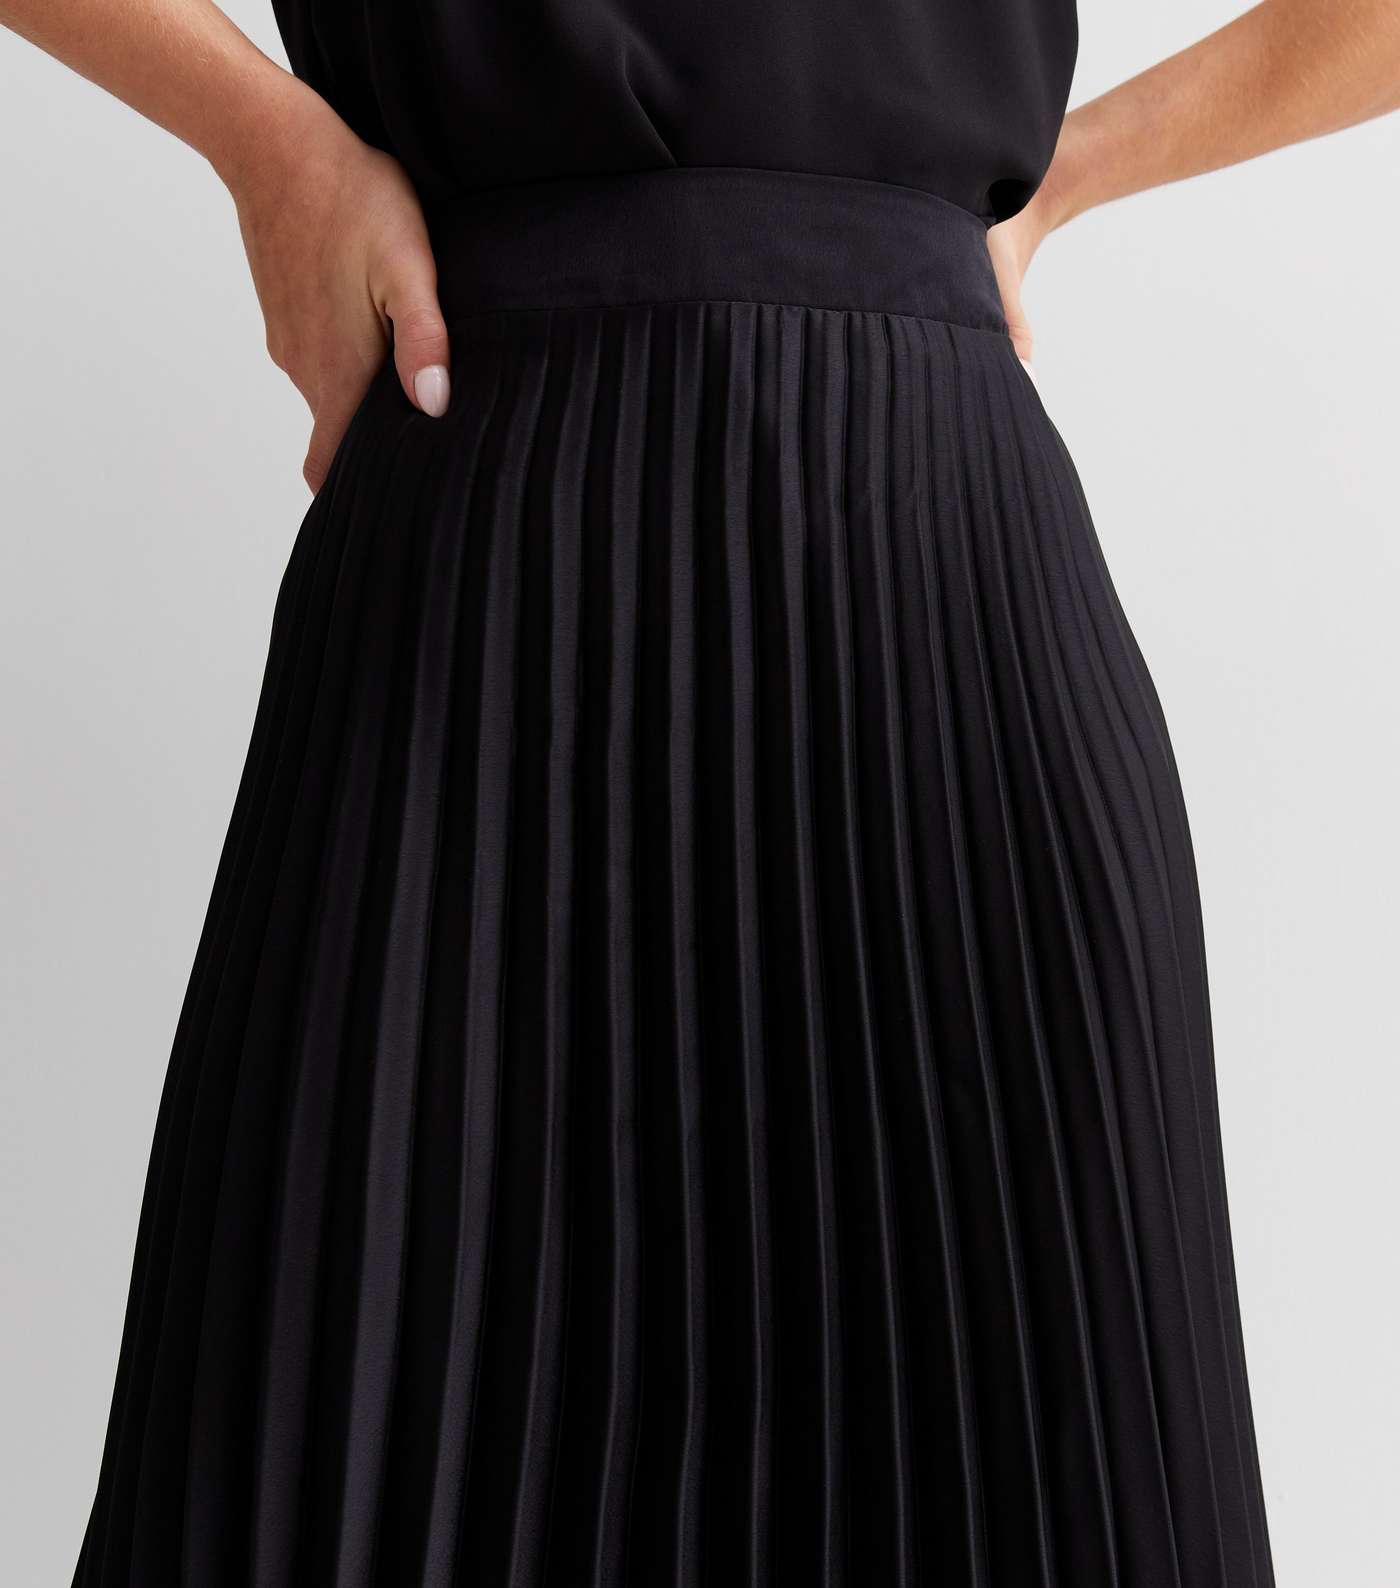 Petite Black Satin Pleated Midaxi Skirt Image 3